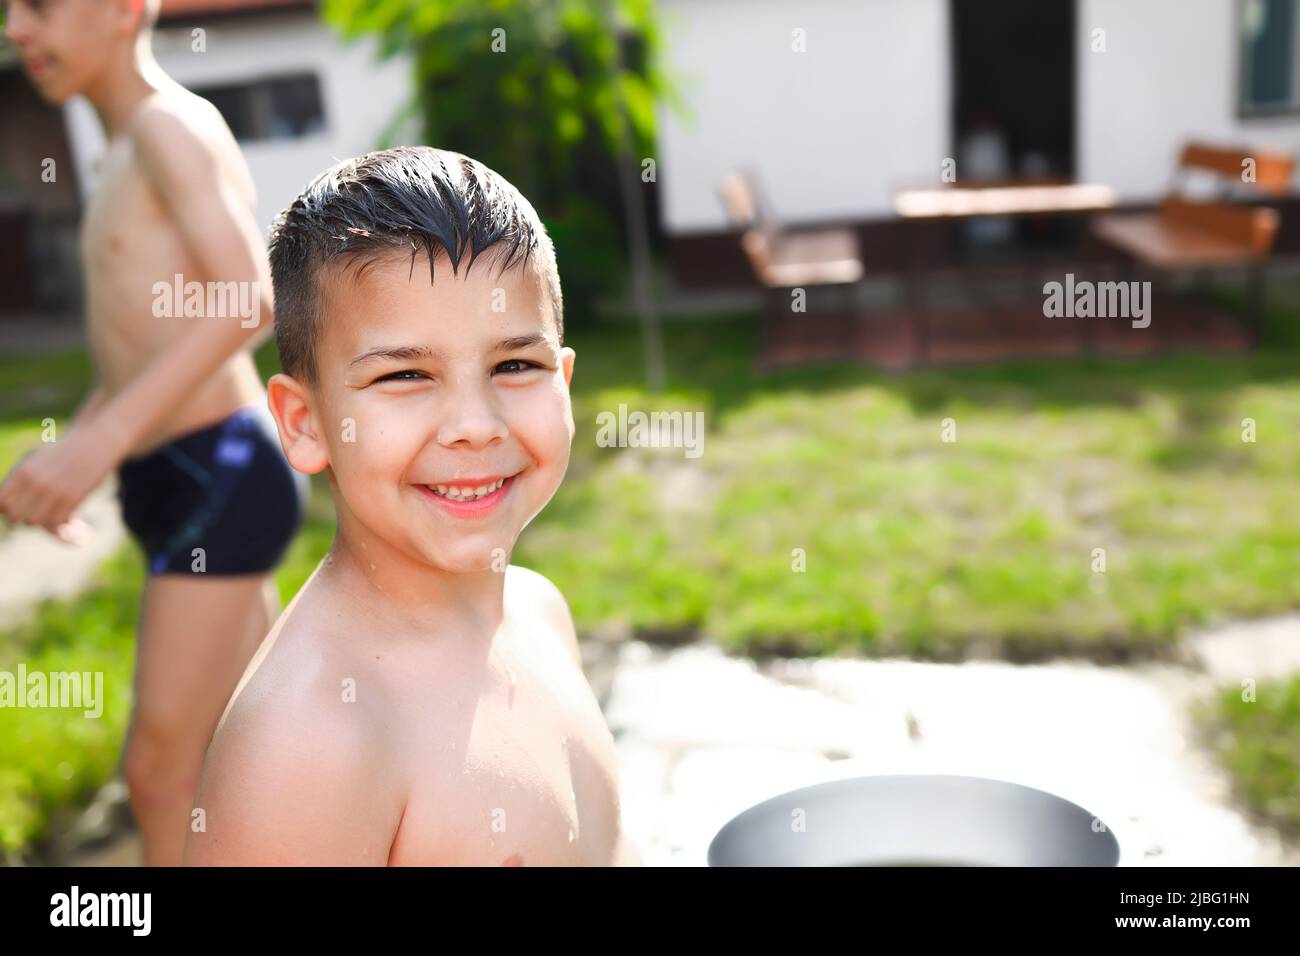 Portrait eines kleinen Jungen, der lächelt, während er Spaß beim Spielen im Hinterhof hat Stockfoto